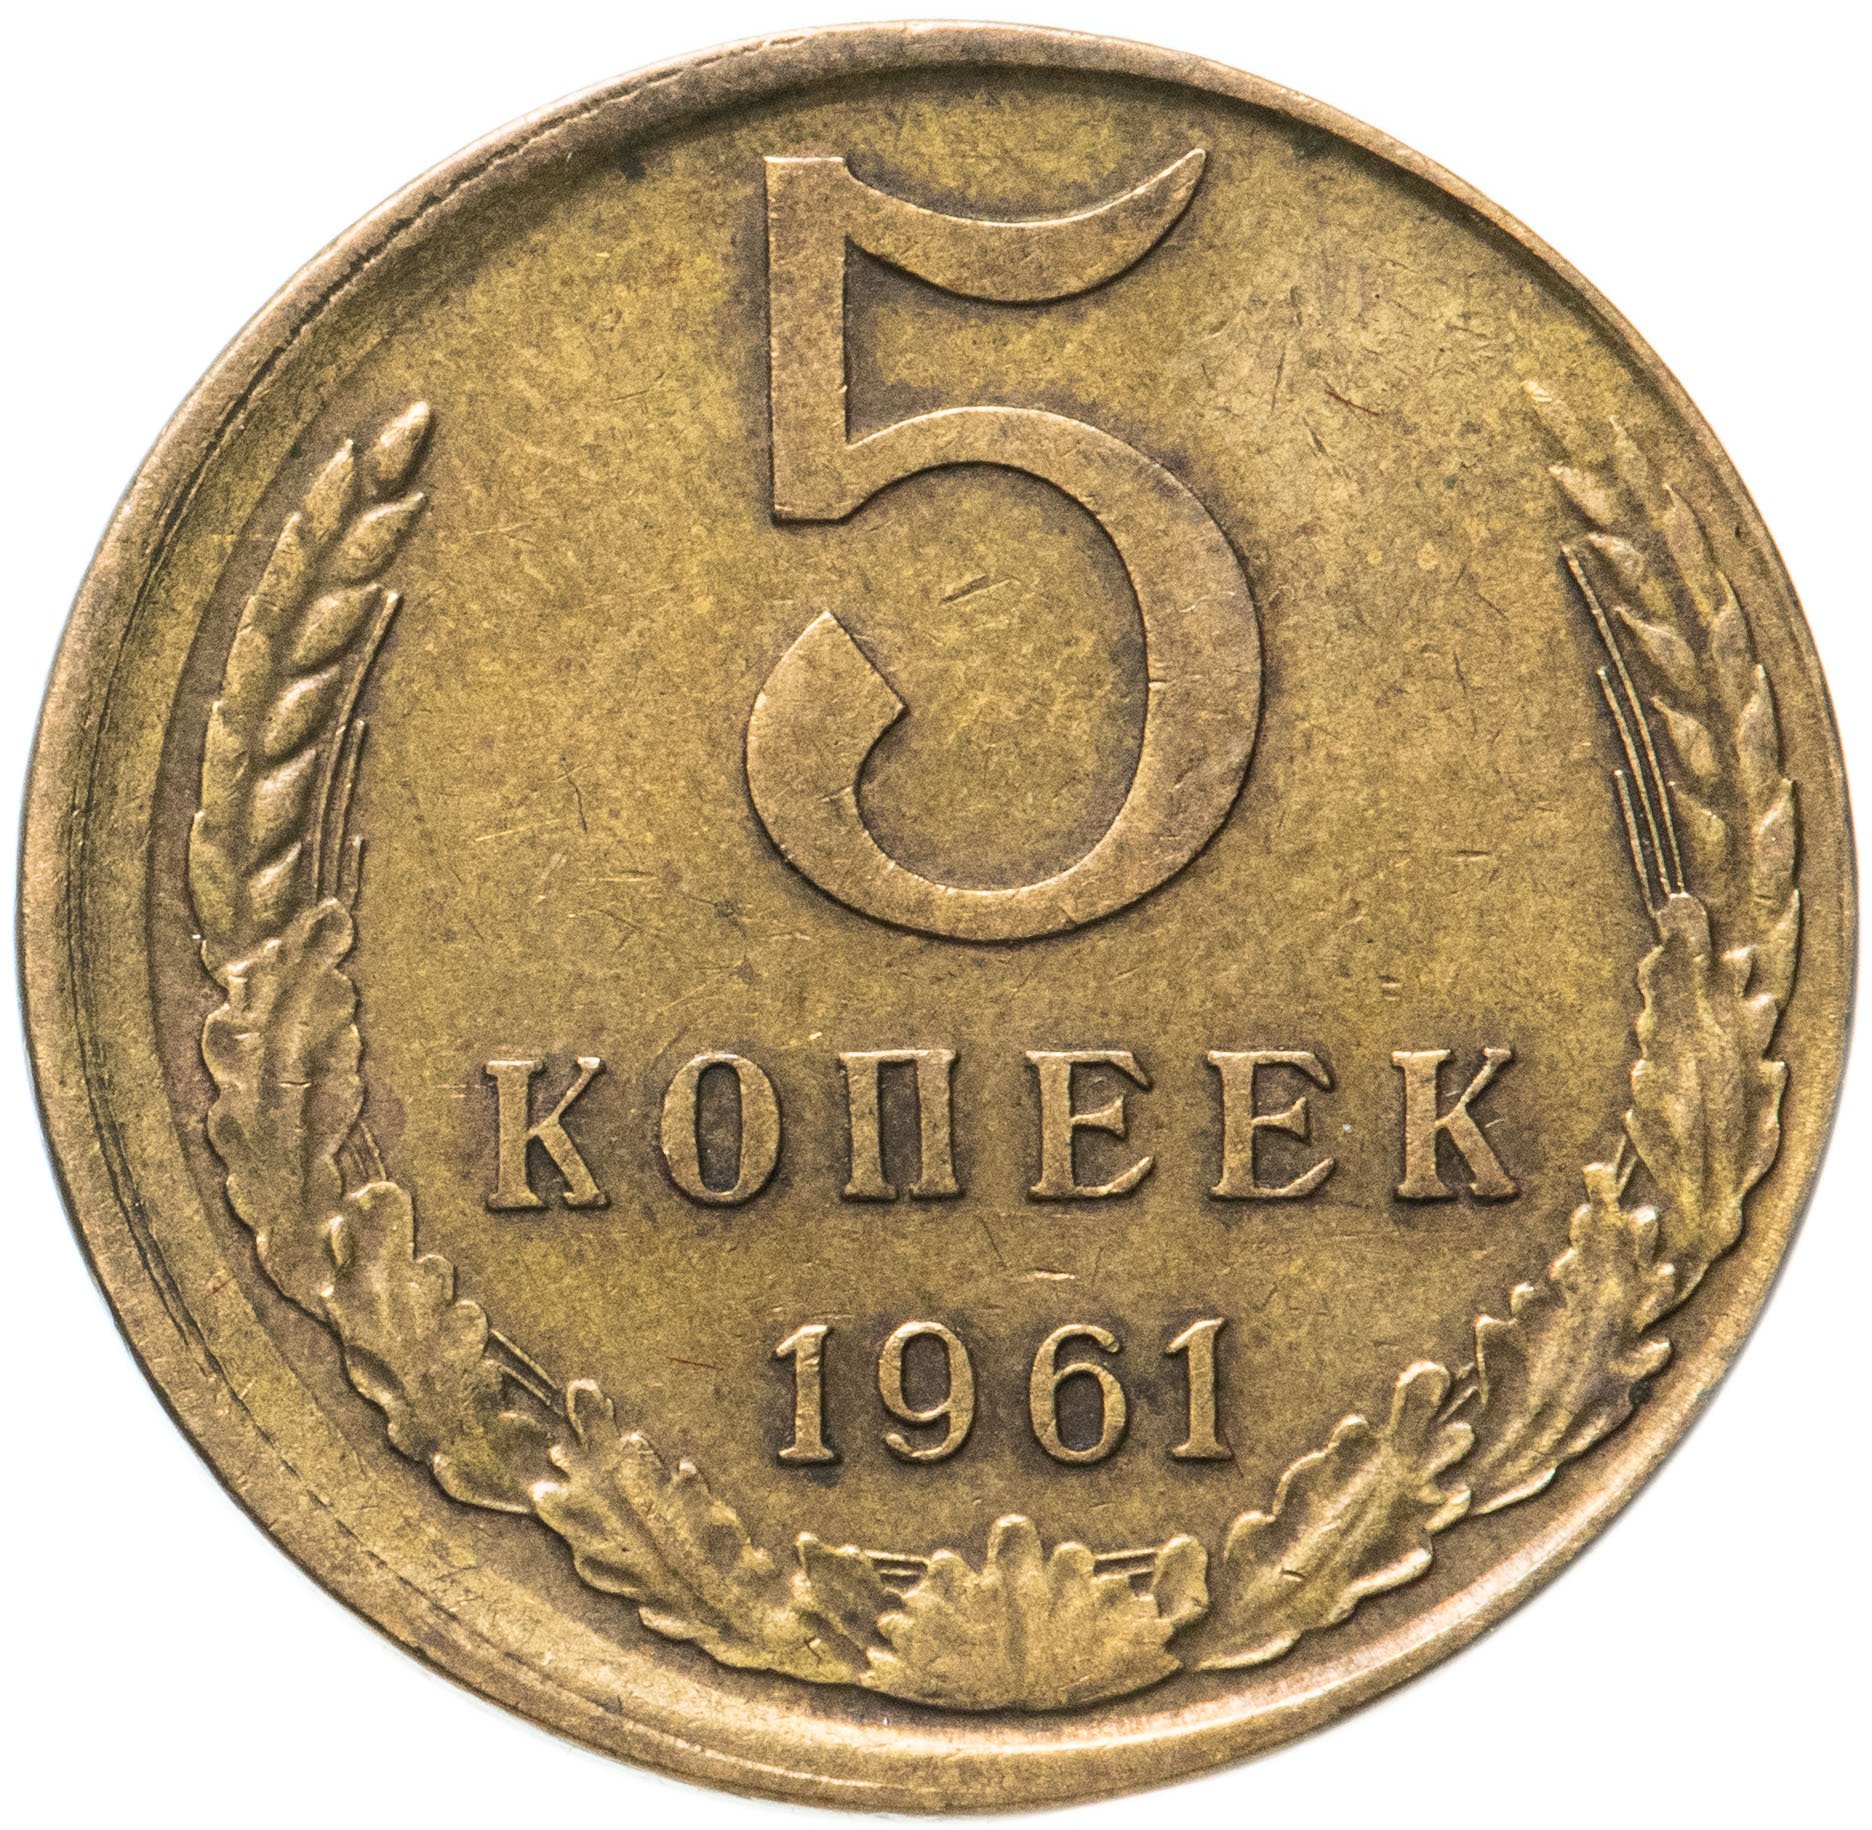 5 от 60 рублей. Советские монеты. Монета 2 копейки. Монеты СССР до 1961 года. Копейка монета.